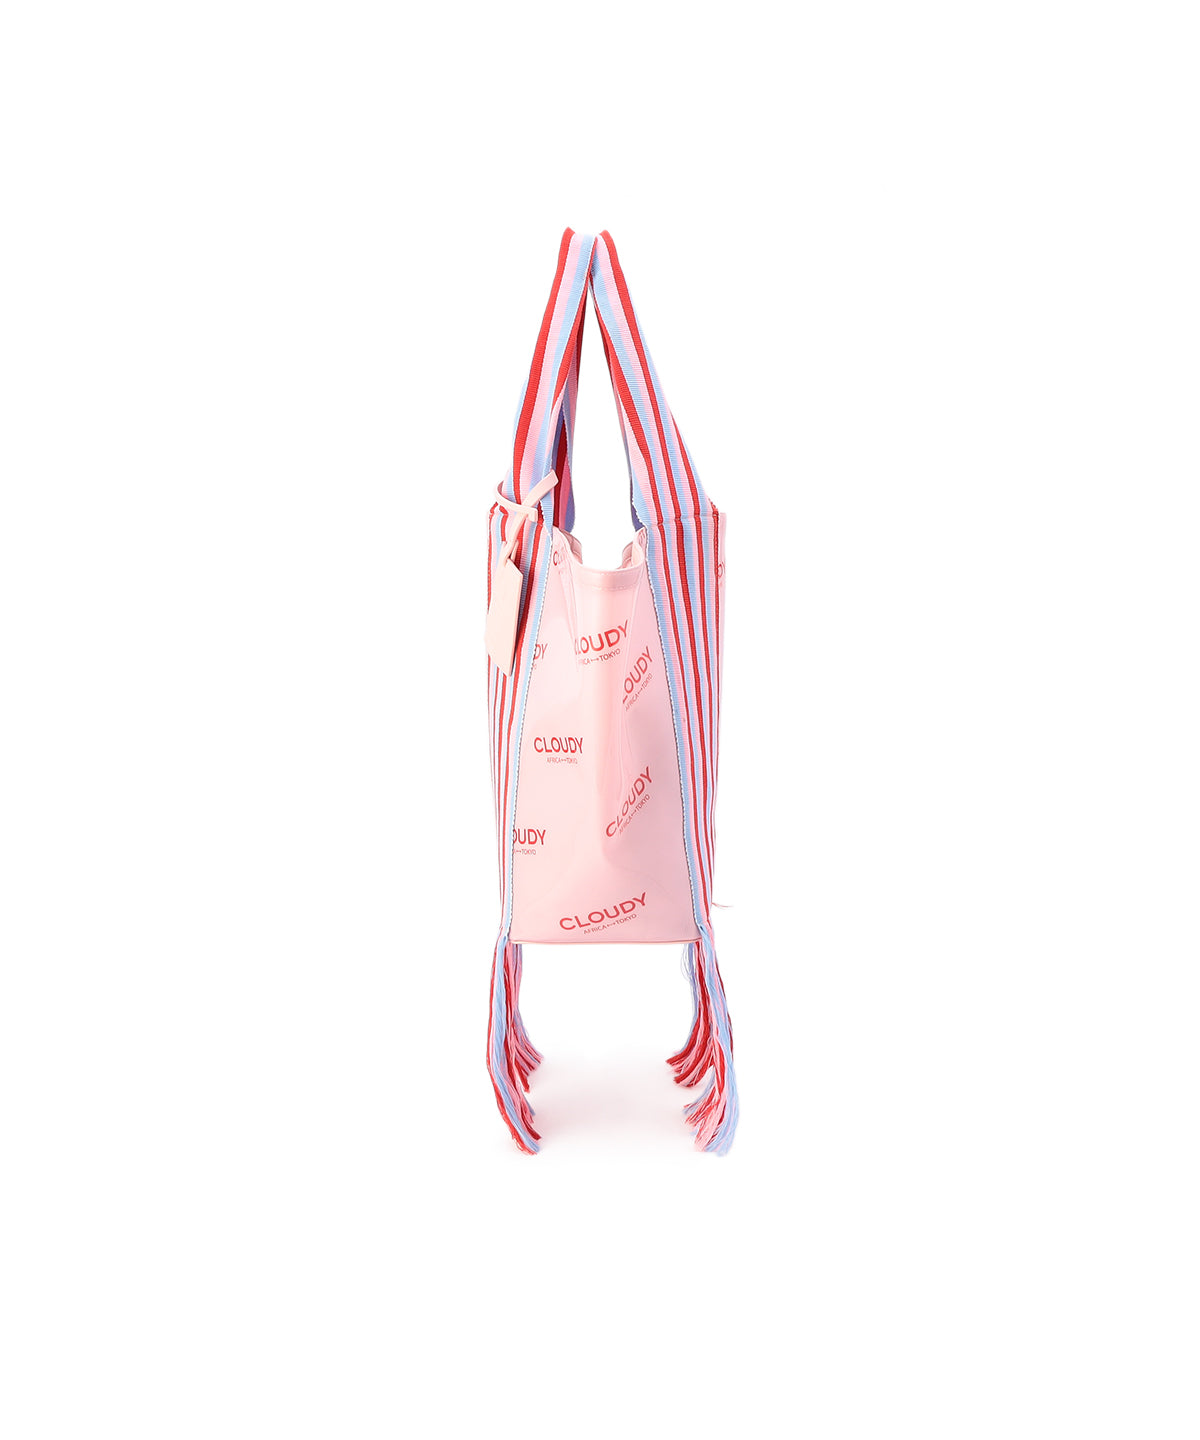 EVA × Kente Bag (Large)PINK